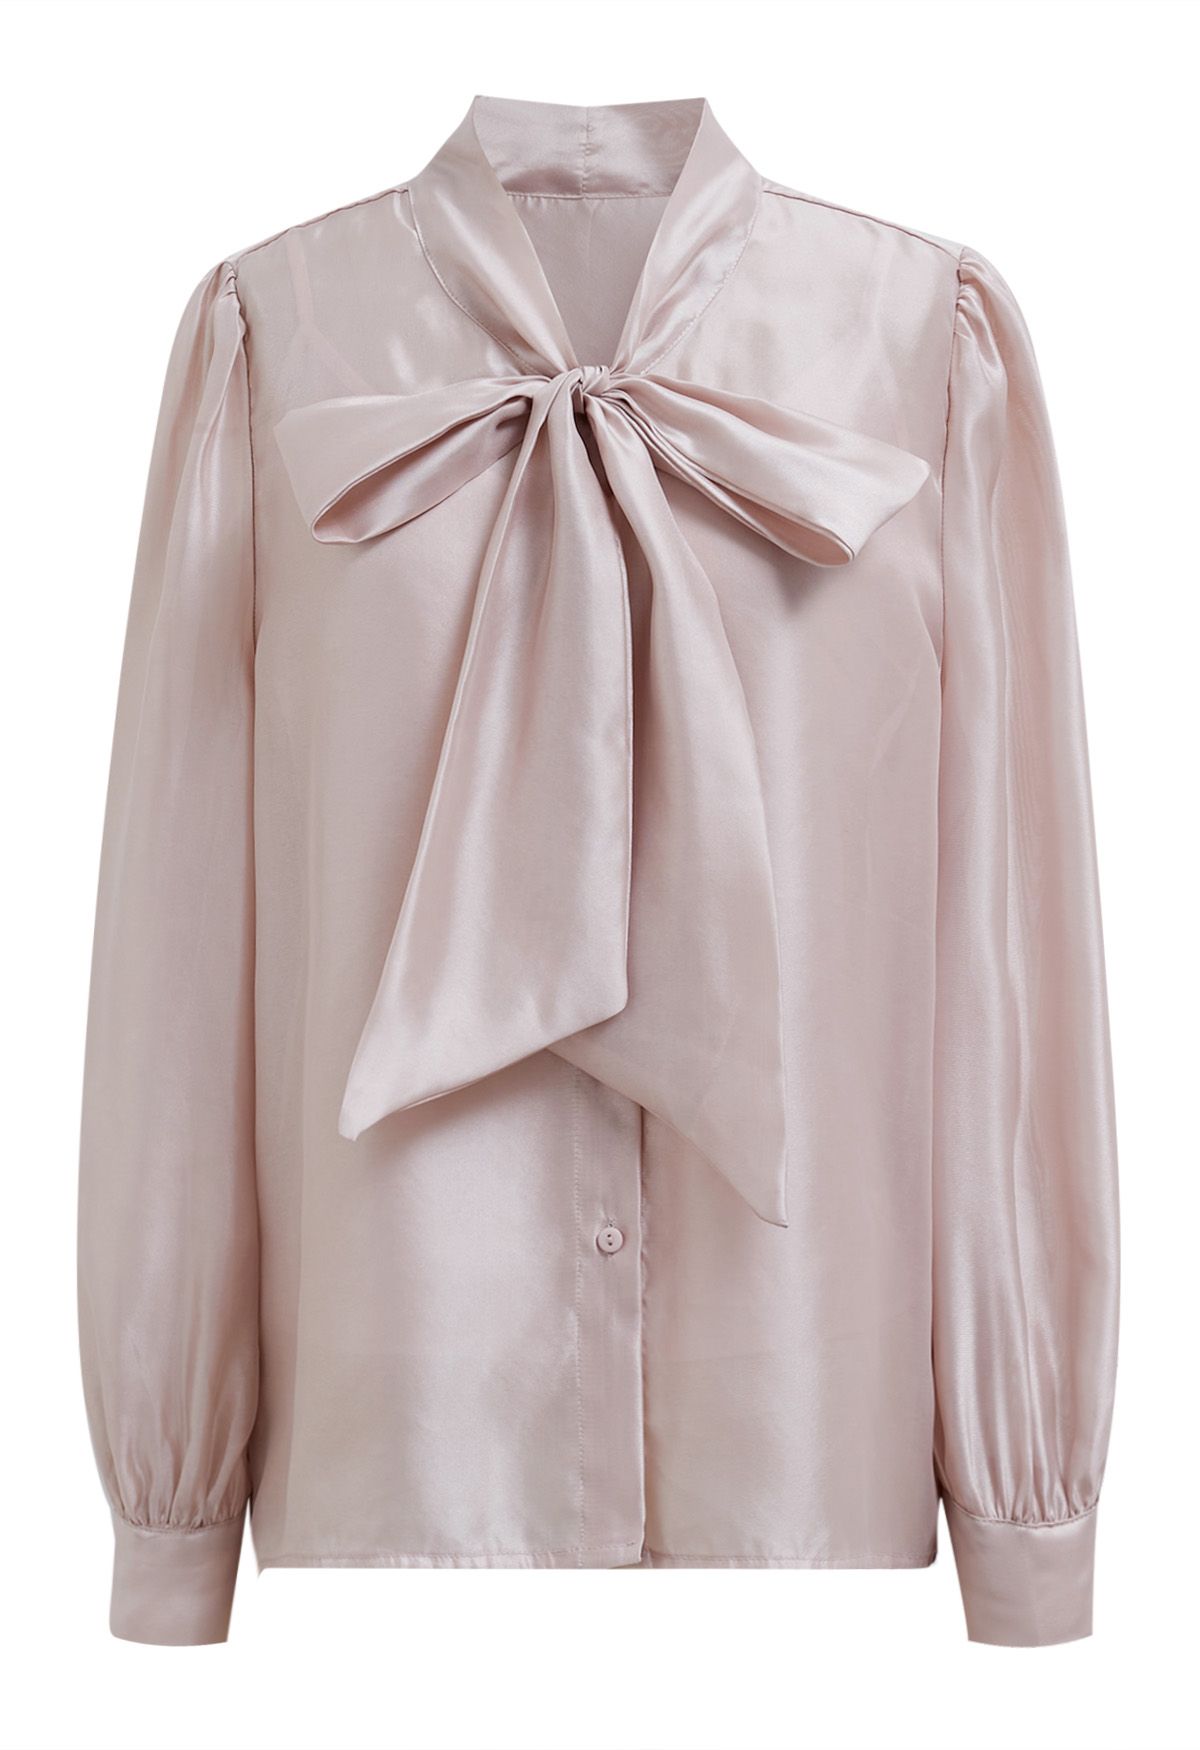 Camisa transparente elegante con mangas abullonadas y lazo en rubor